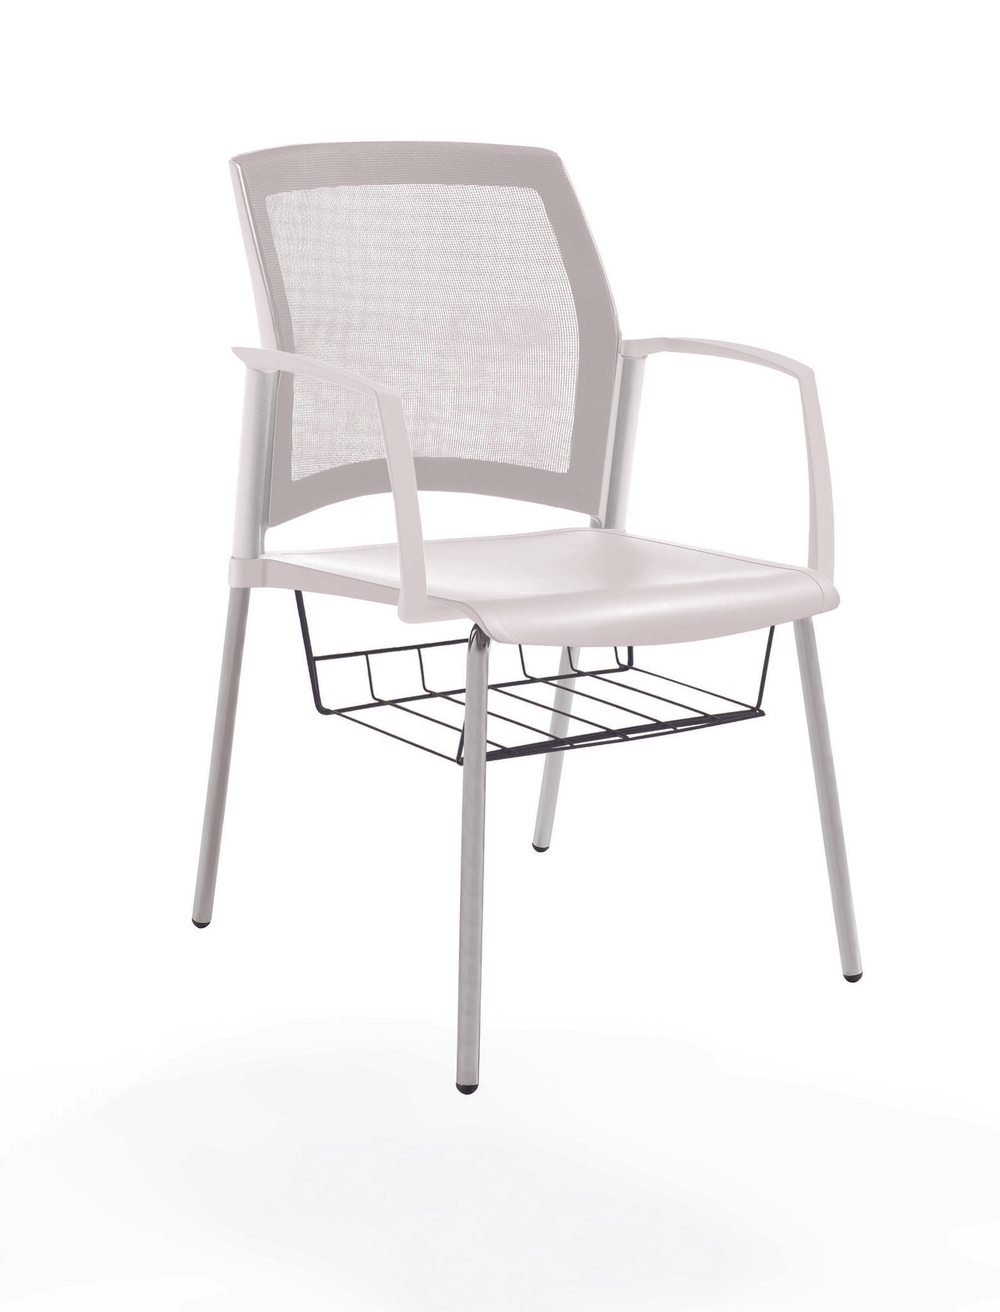 стул Rewind на 4 ногах, каркас серыйй, пластик белый, спинка-сетка, с закрытыми подлокотниками, с подседельной корзиной